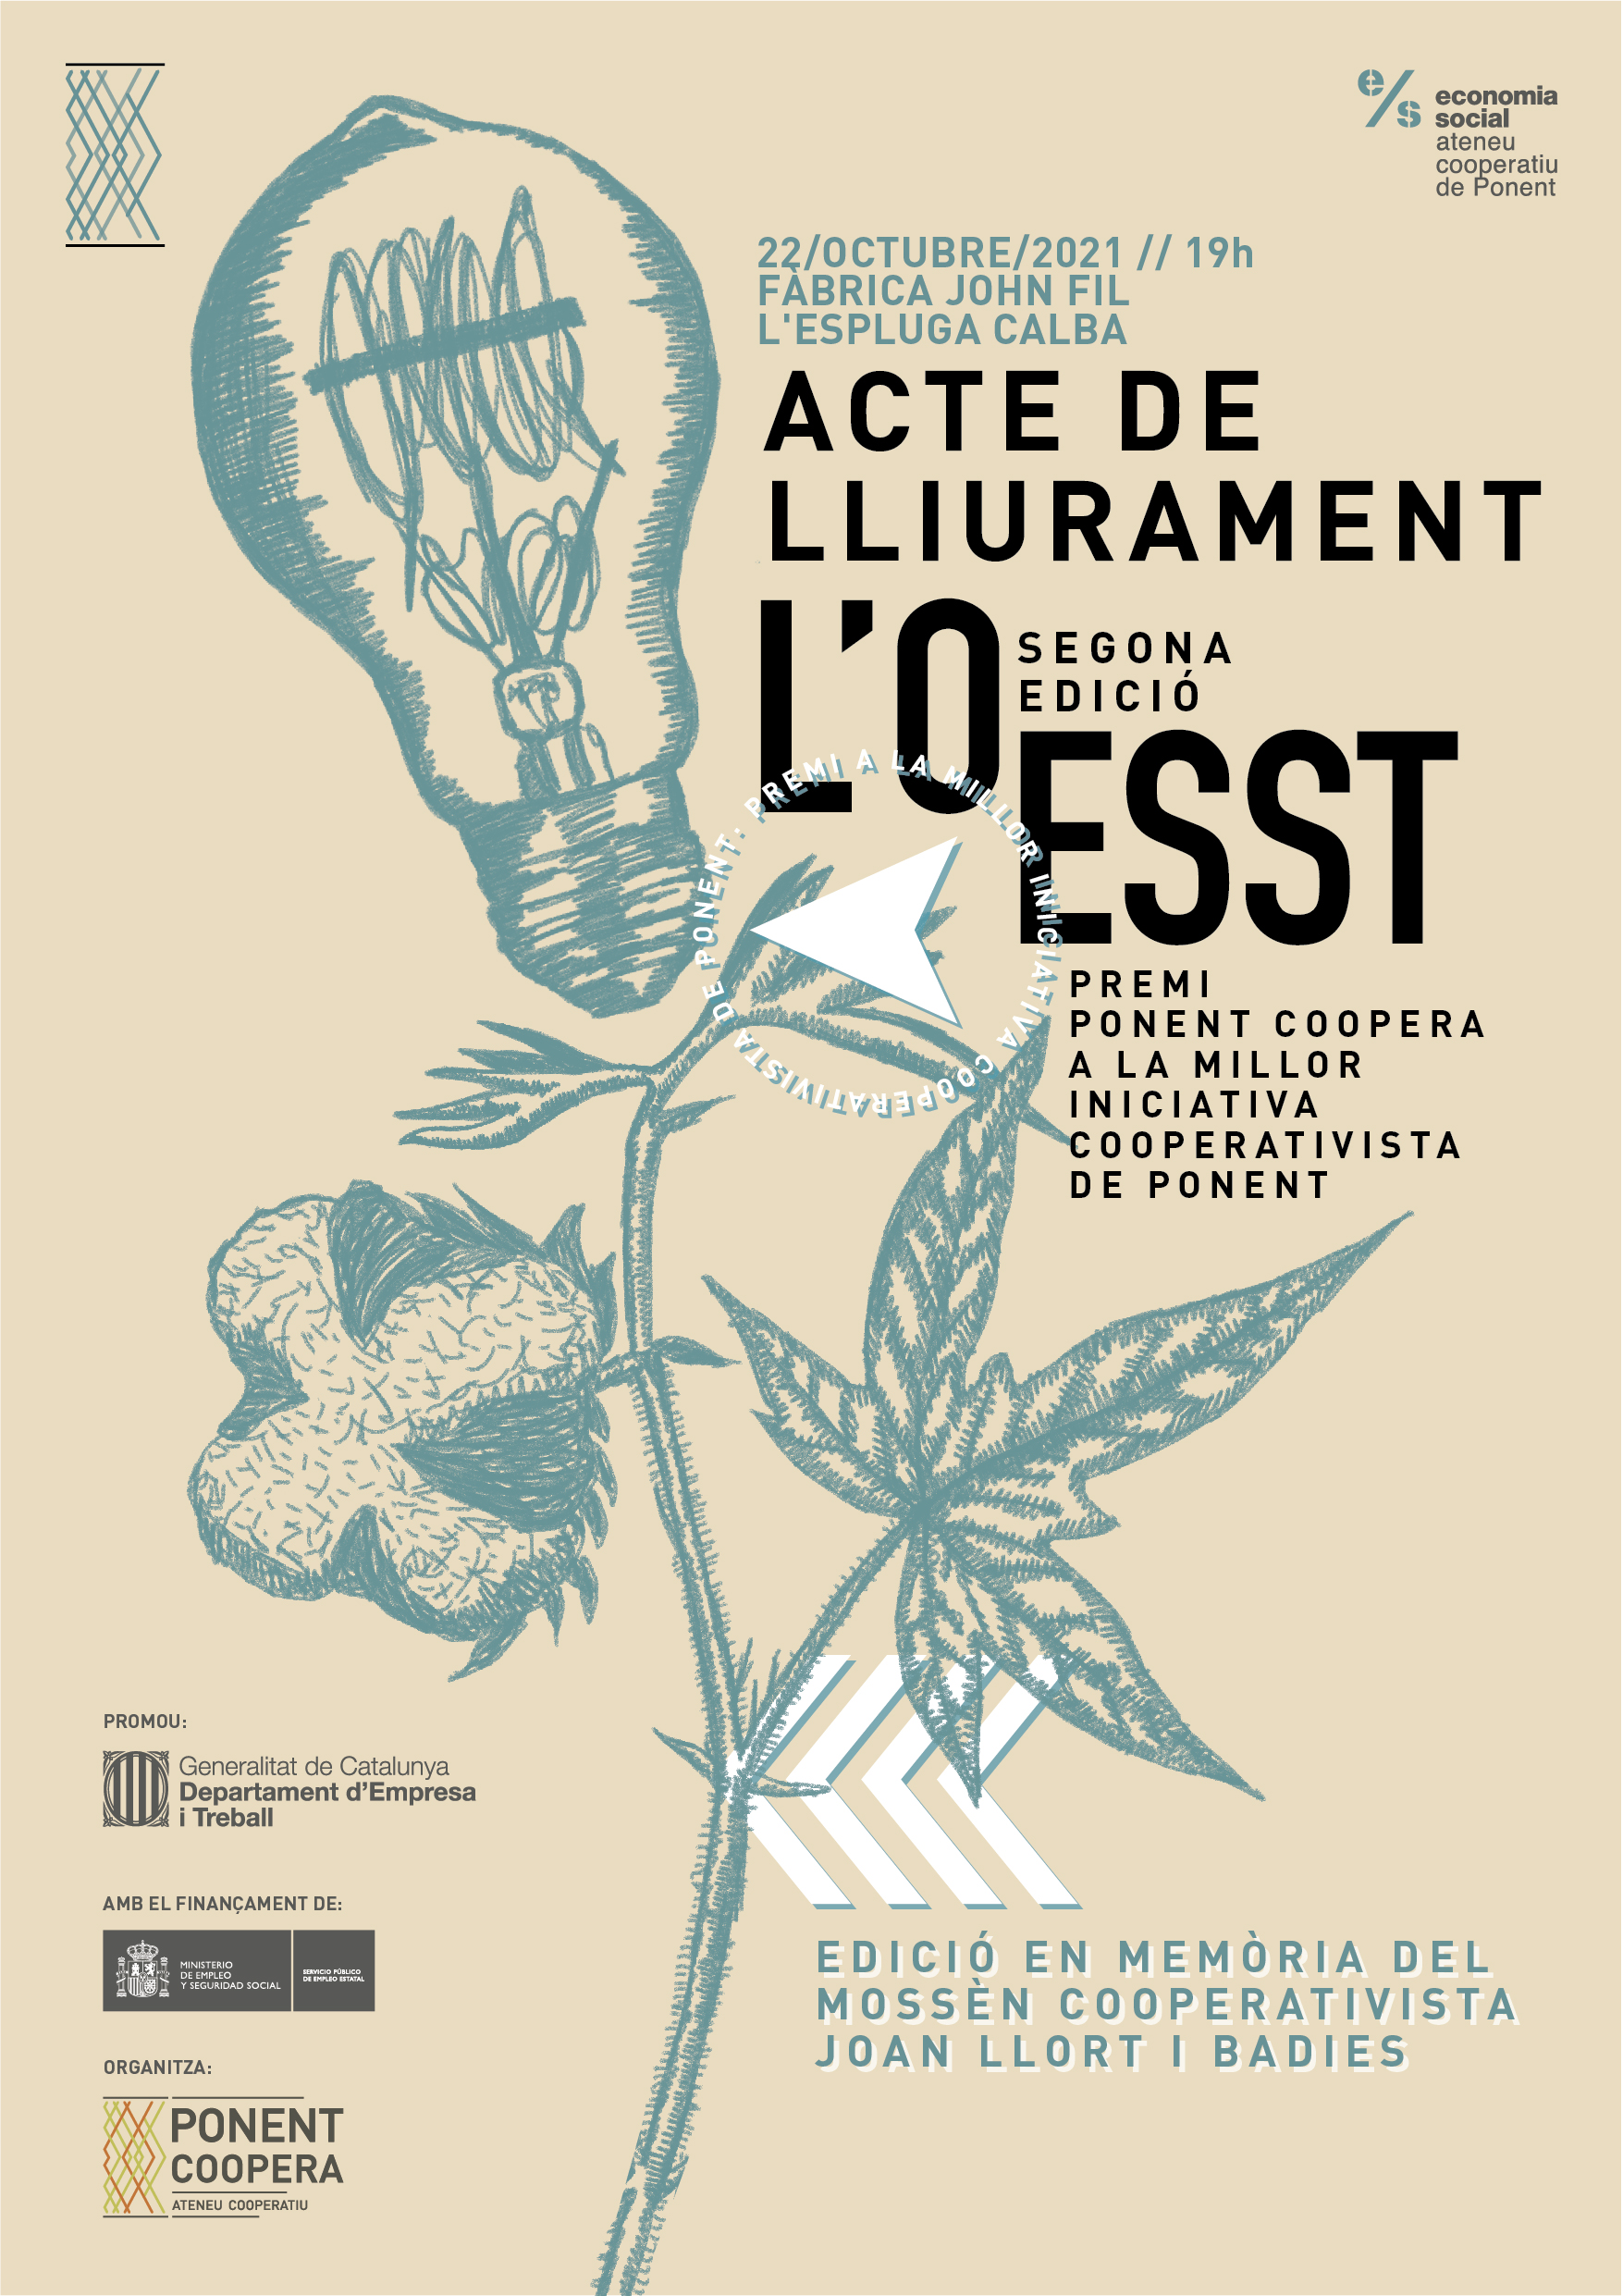 Acte de lliurament 2a edició de L'OESST, Premi Ponent Coopera a la millor iniciativa cooperativista de Ponent